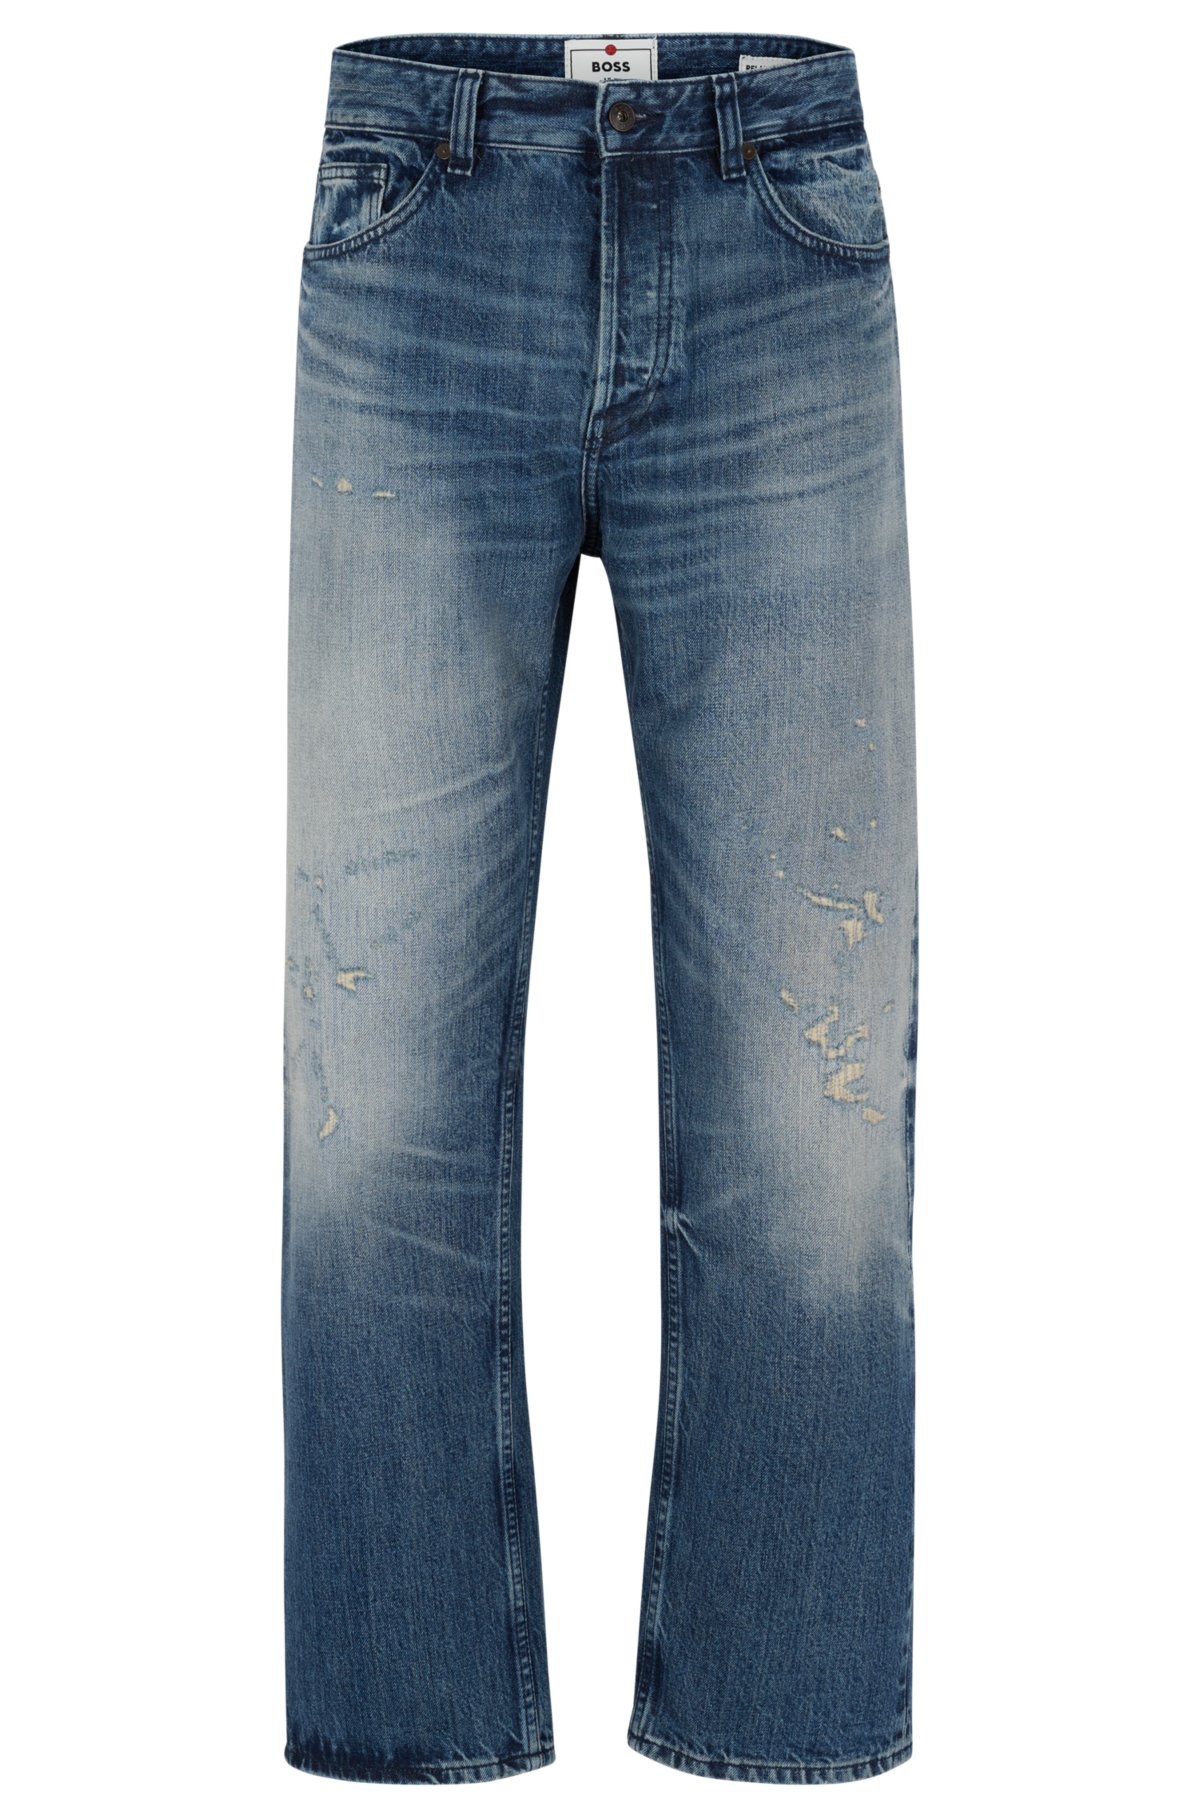 BOSS - Relaxed-fit jeans Japanese ring-spun selvedge denim